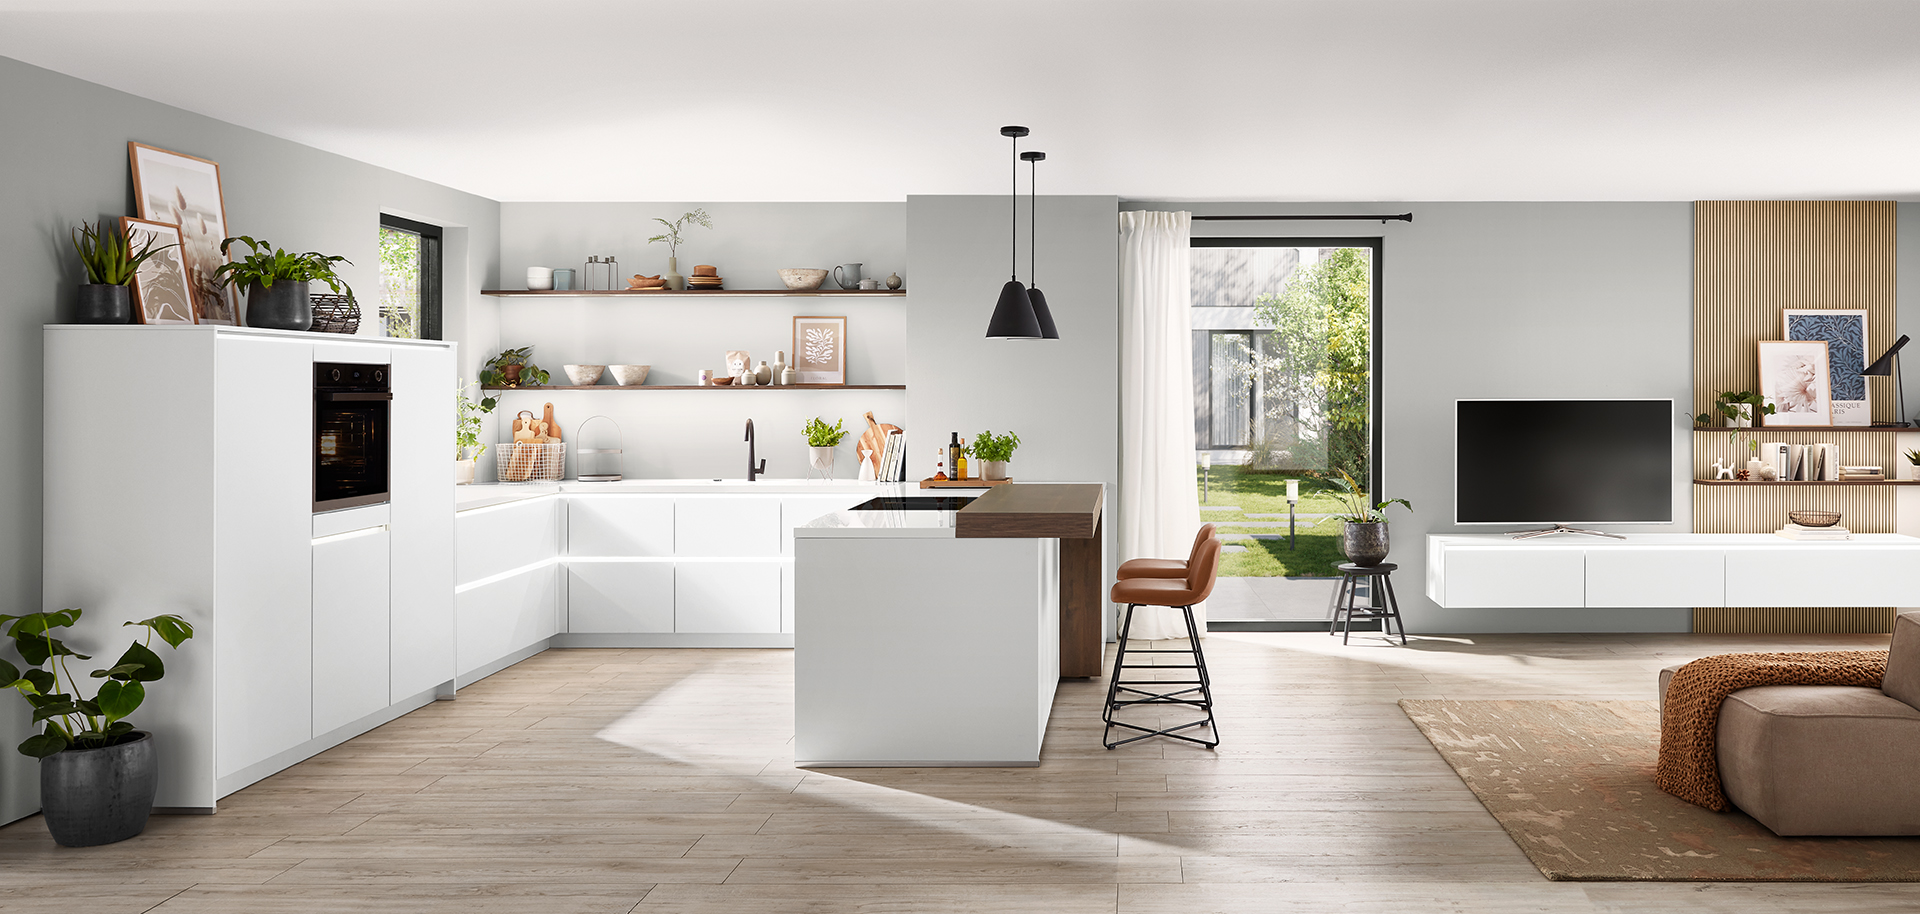 Cocina moderna con gabinetes blancos que se integra en un elegante espacio de vida con acentos de madera, mostrando un diseño interior contemporáneo y sin costuras.